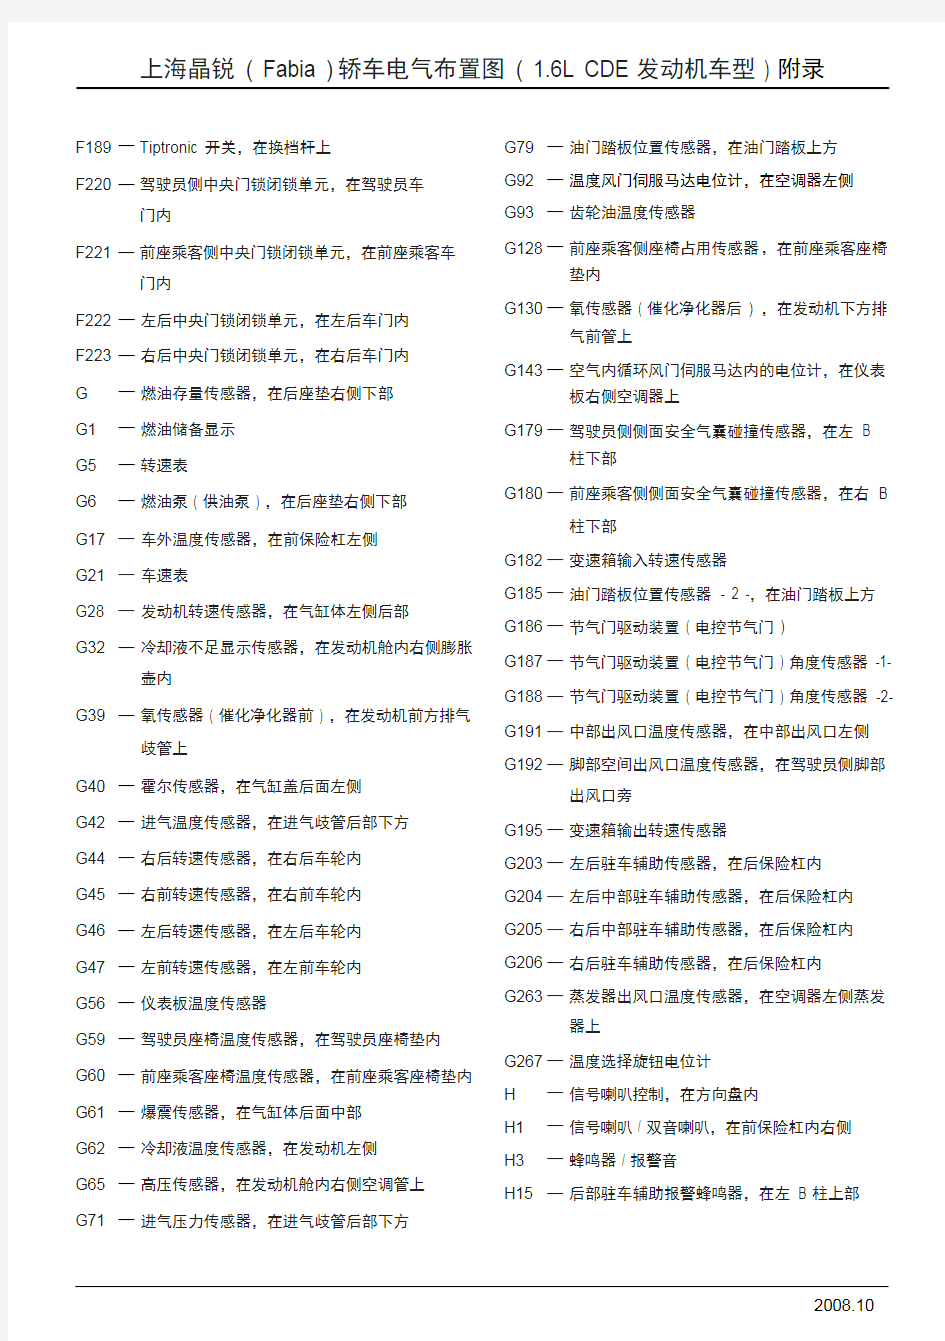 上海晶锐 ( fabia ) 轿车电气布置图 ( 16l cde 发动机车型 ) 元件及插头名称